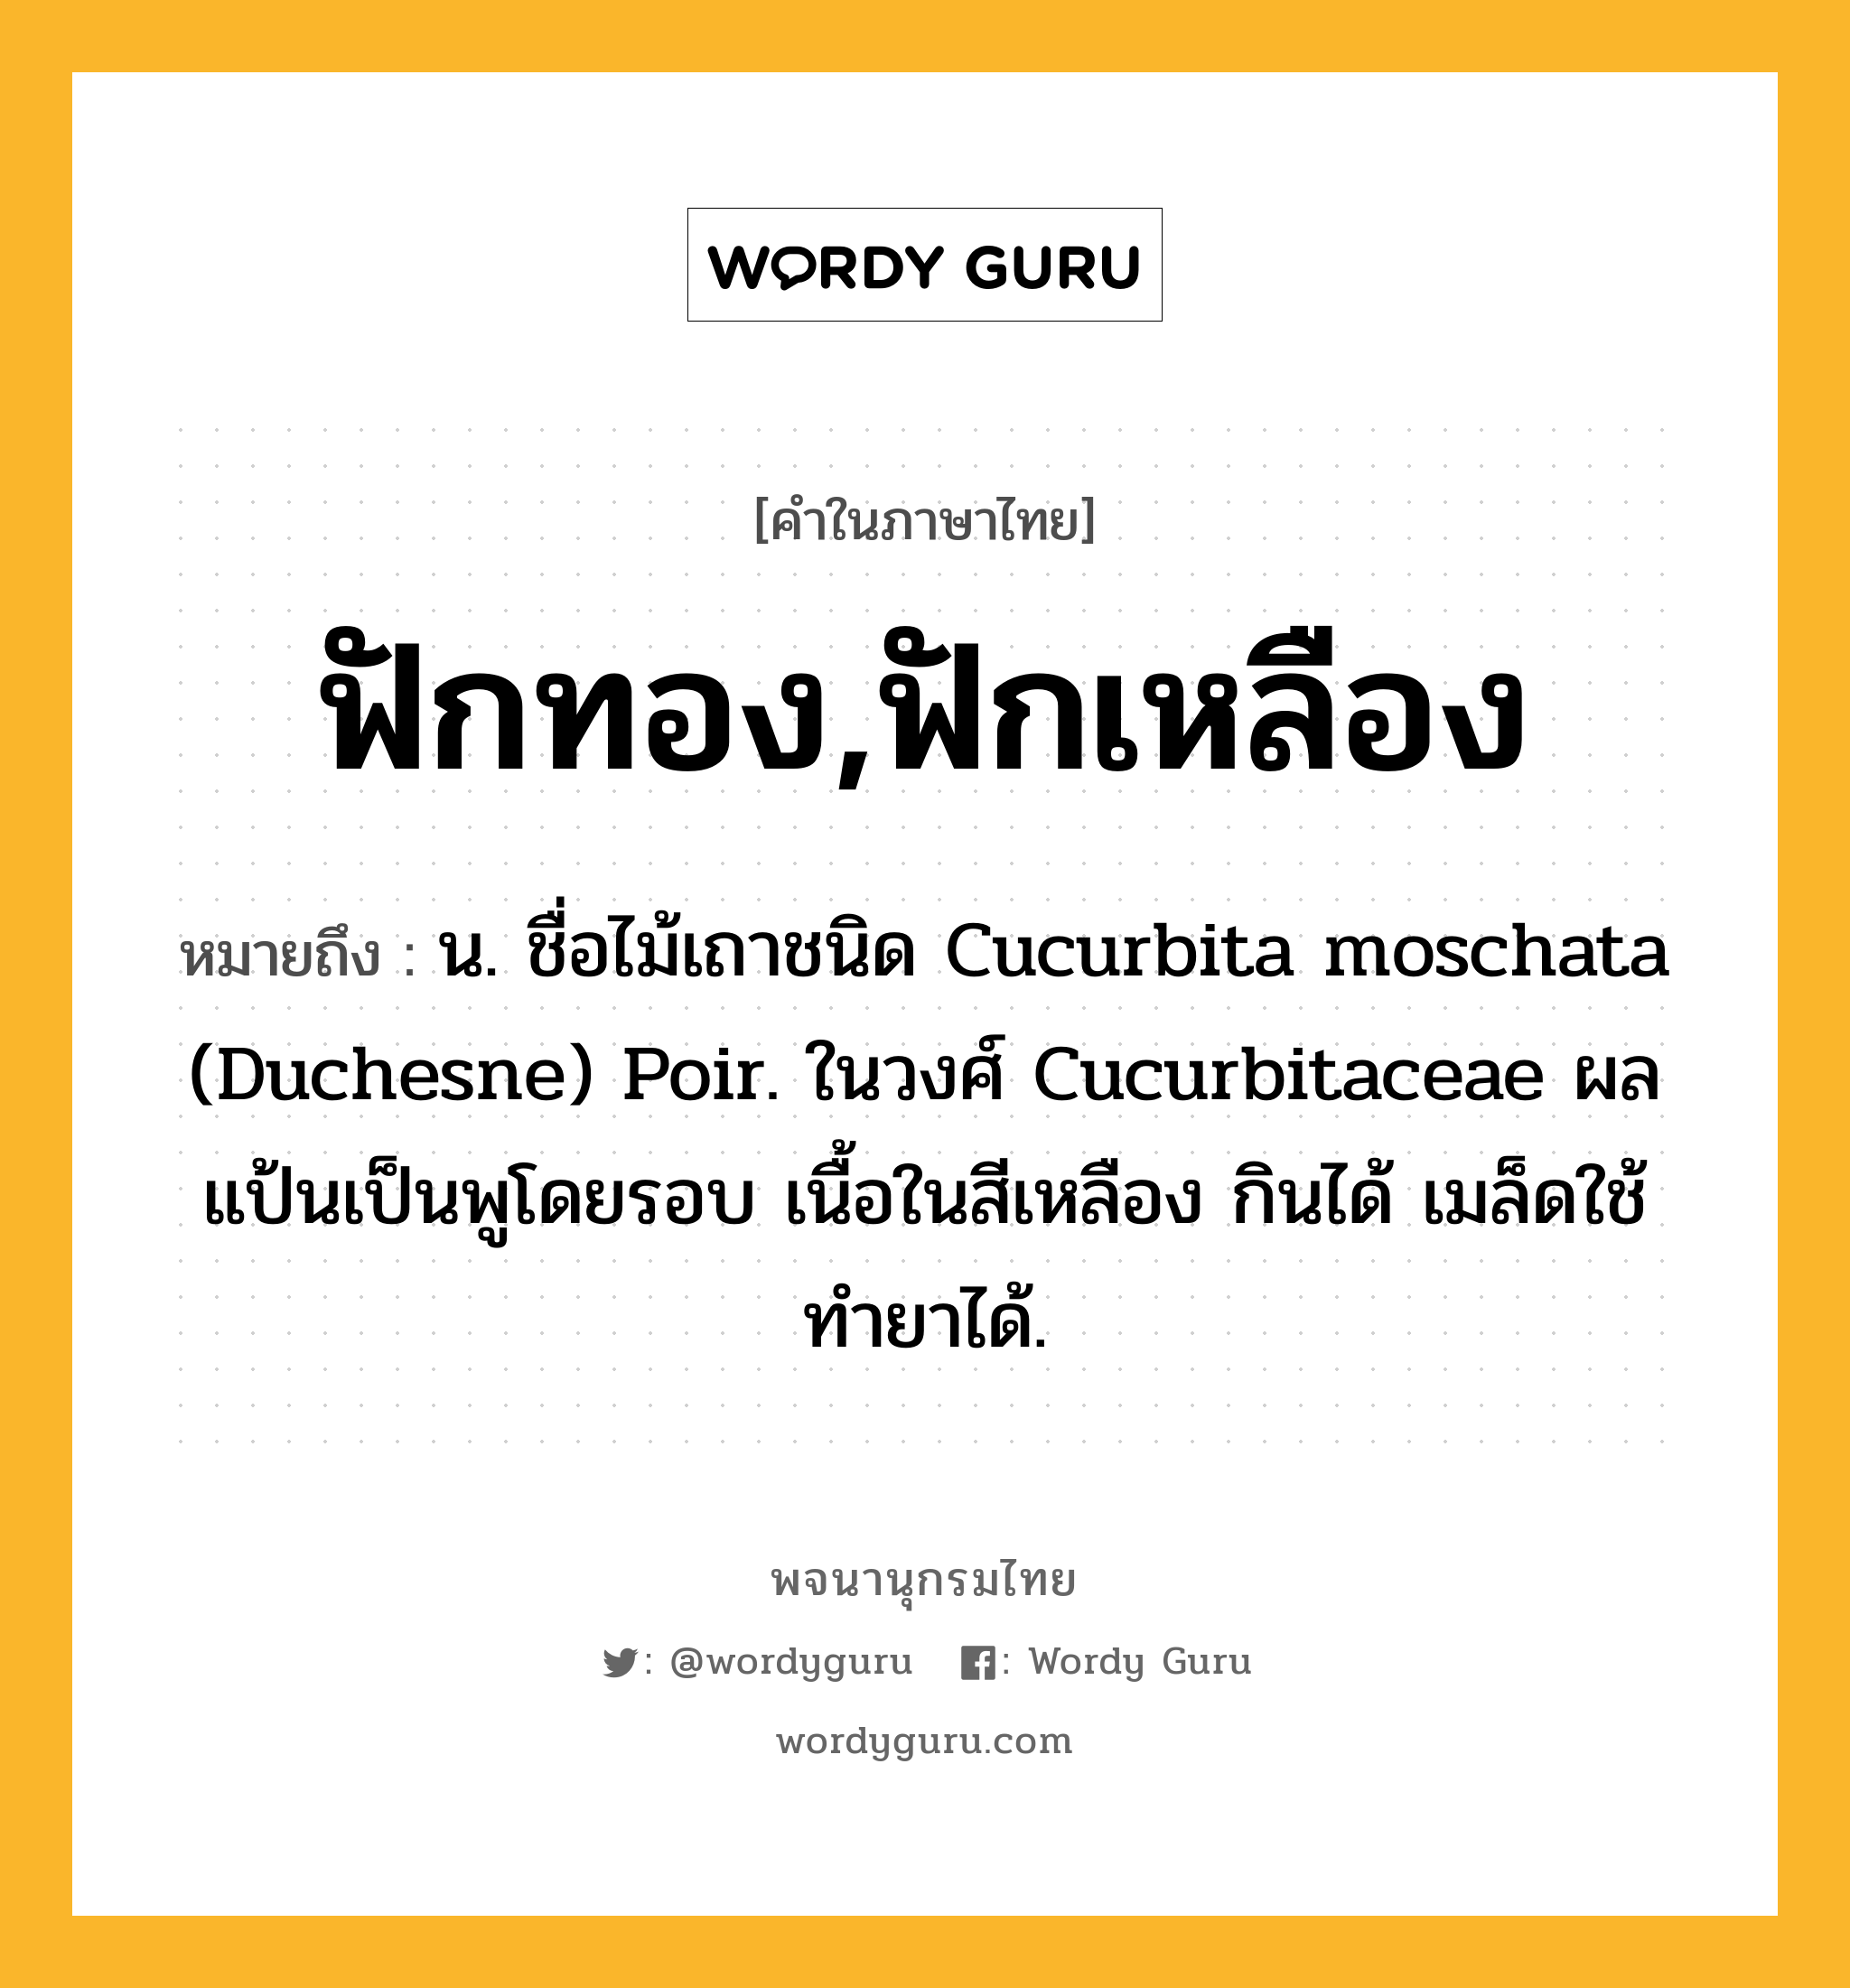 ฟักทอง,ฟักเหลือง หมายถึงอะไร?, คำในภาษาไทย ฟักทอง,ฟักเหลือง หมายถึง น. ชื่อไม้เถาชนิด Cucurbita moschata (Duchesne) Poir. ในวงศ์ Cucurbitaceae ผลแป้นเป็นพูโดยรอบ เนื้อในสีเหลือง กินได้ เมล็ดใช้ทํายาได้.